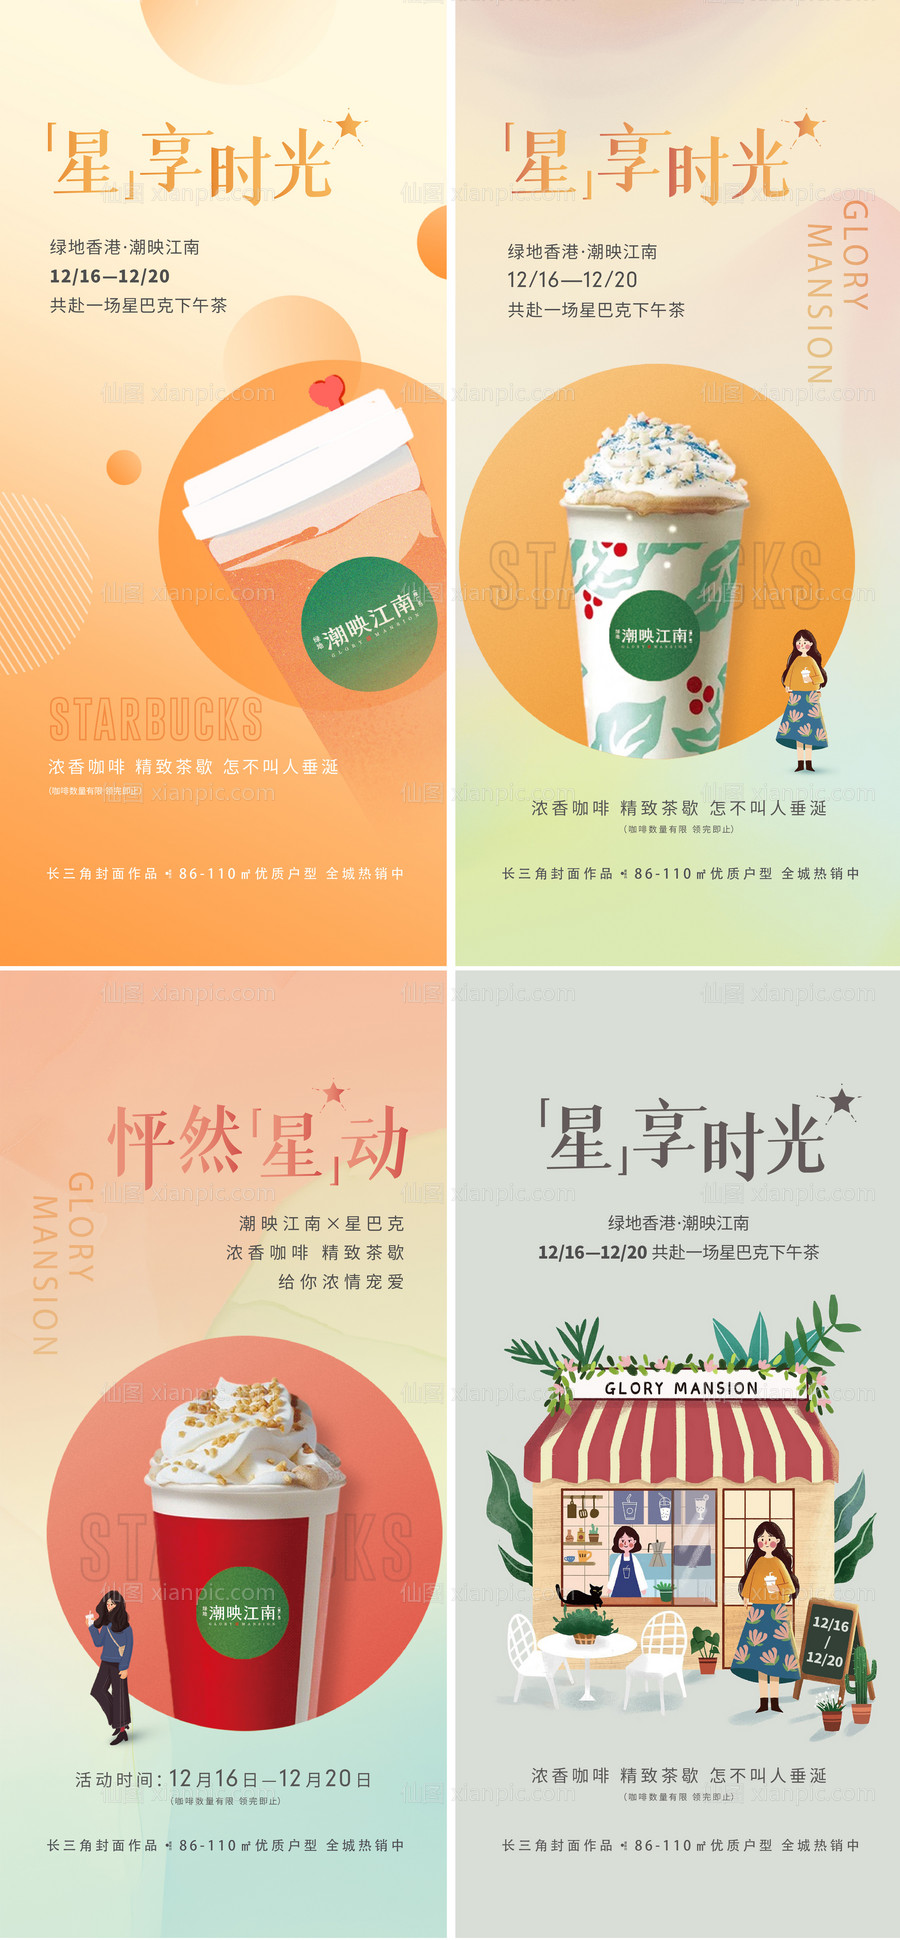 素材乐-房地产奶茶活动系列海报